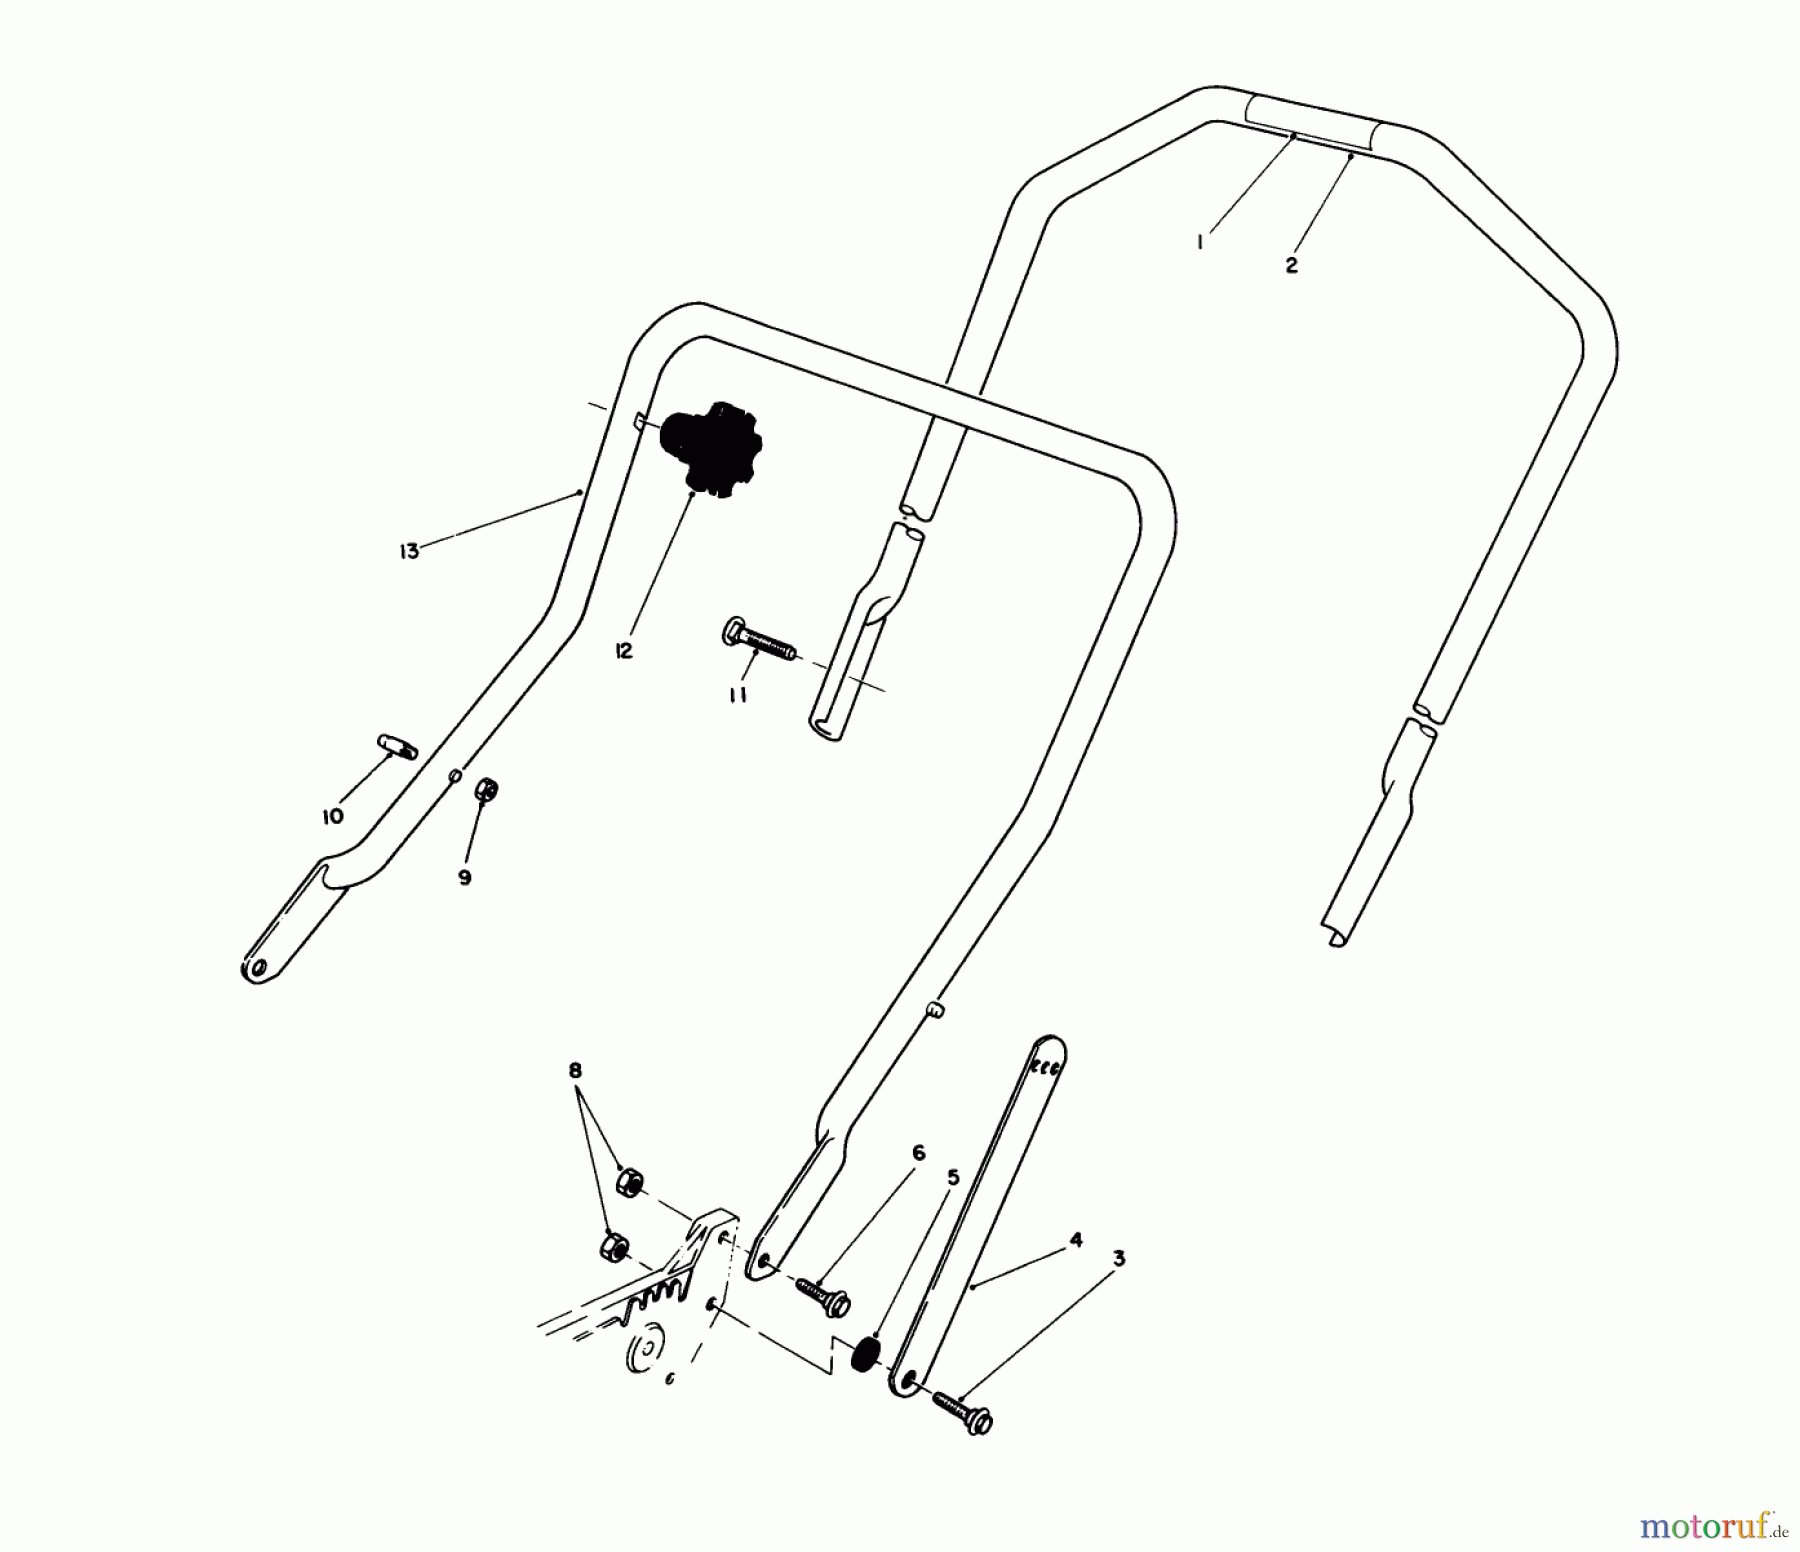  Toro Neu Mowers, Walk-Behind Seite 1 20526 - Toro Lawnmower, 1988 (8000001-8999999) HANDLE ASSEMBLY